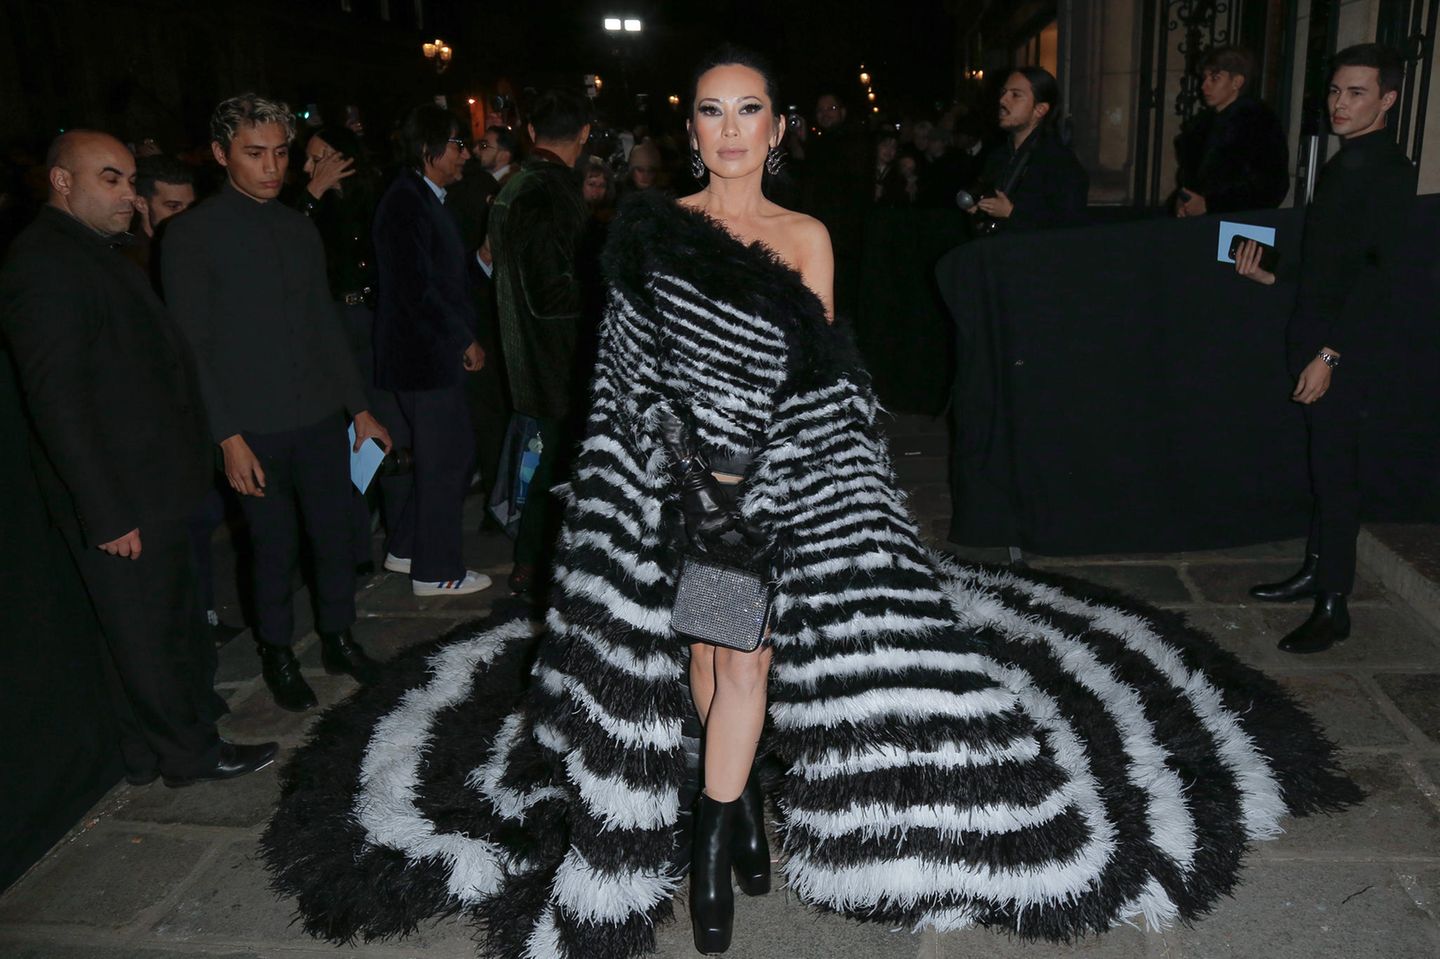 Für die Haute-Couture-Show von Jean Paul Gautier wählt TV-Star Christine Chiu eine schwarz-weiß-gestreifte Kreation aus Federn mit dramatischer Schleppe.